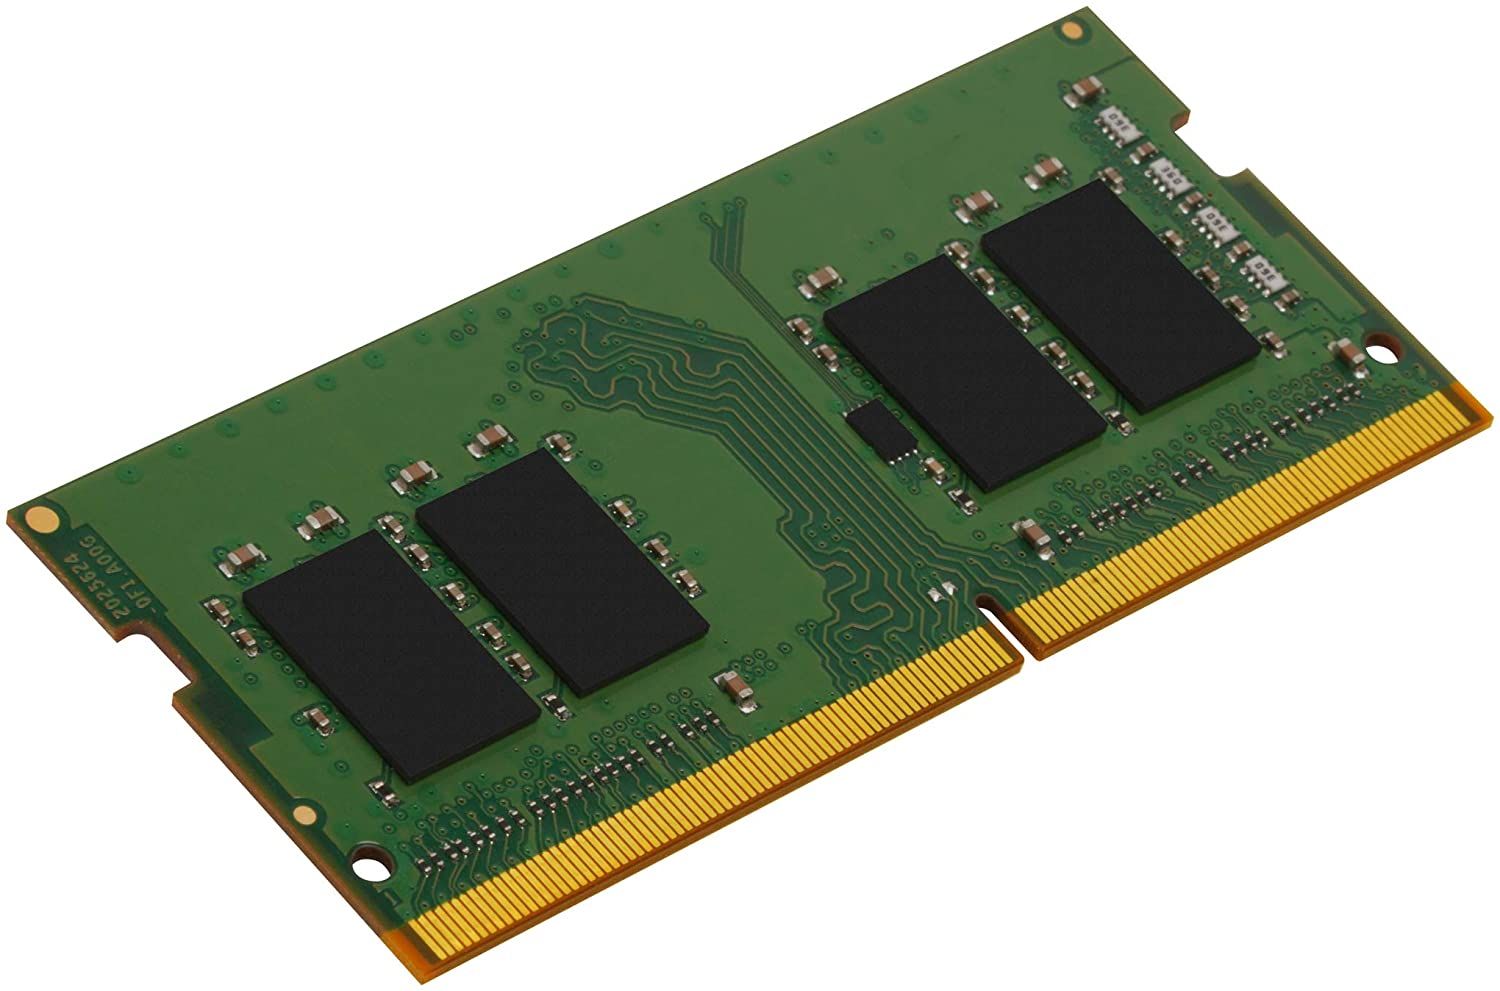 KVR26S19S6/8 - Mdulo Kingston DDR4 8Gb 2666Mhz 260-pin SODIMM 1.2V Porttil (KVR26S19S6/8)